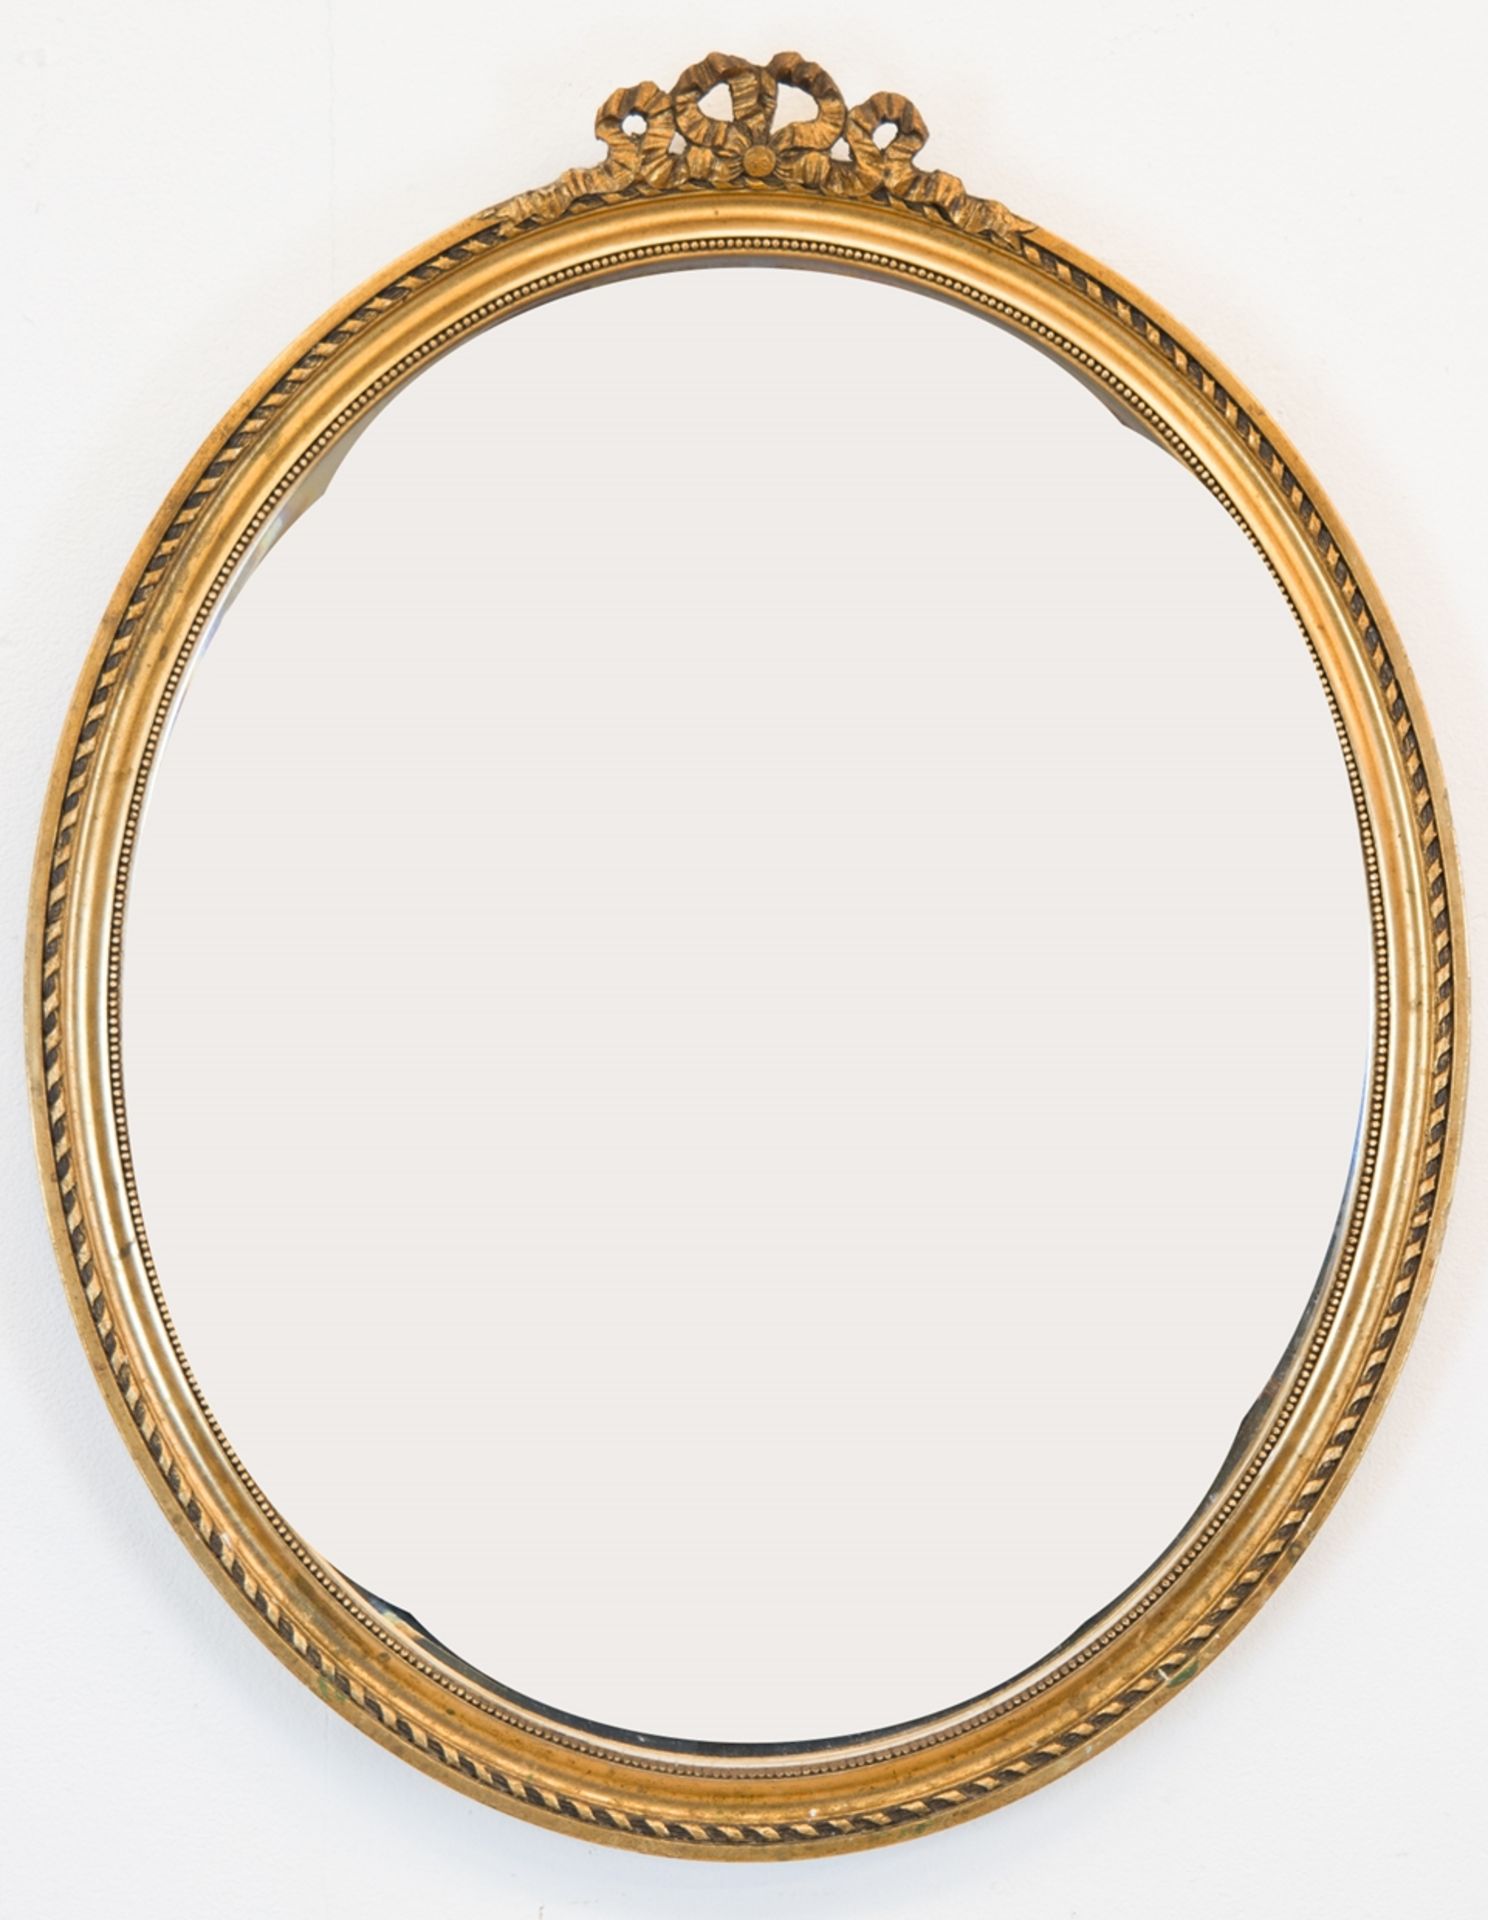 Spiegel, oval, im goldenem Holzrahmen mit Reliefdekor und Schleifenbekrönung, mit facettiertem Glas